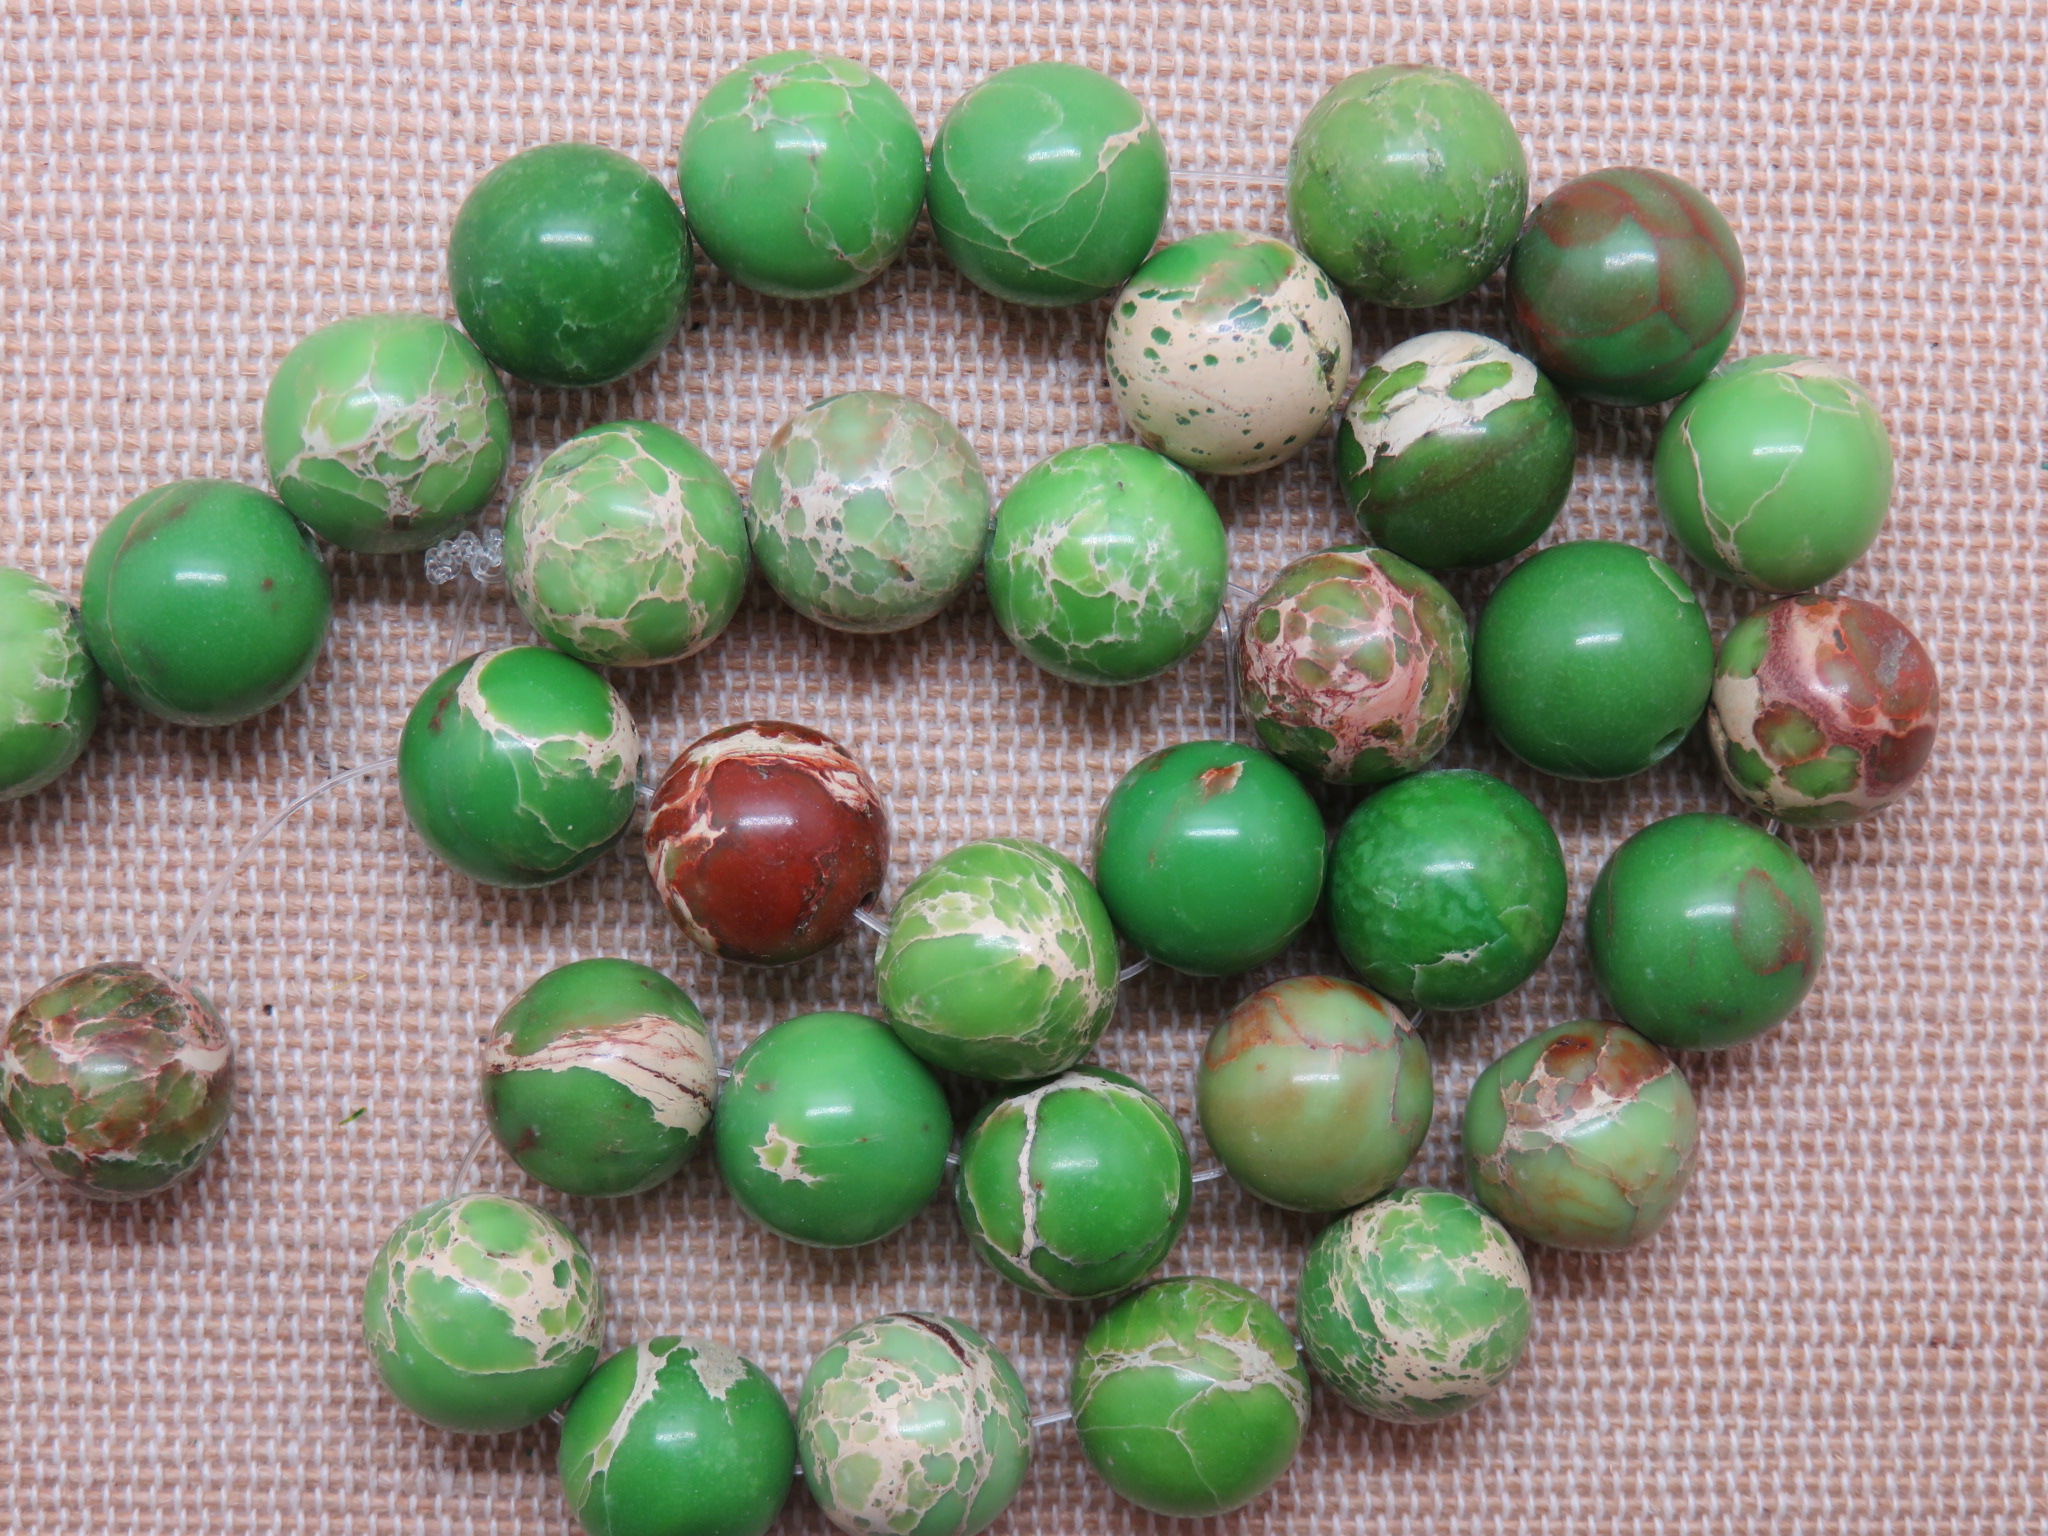 Perles Jaspe impériale verte 10mm ronde effet sédiment marin, pierre de gemme